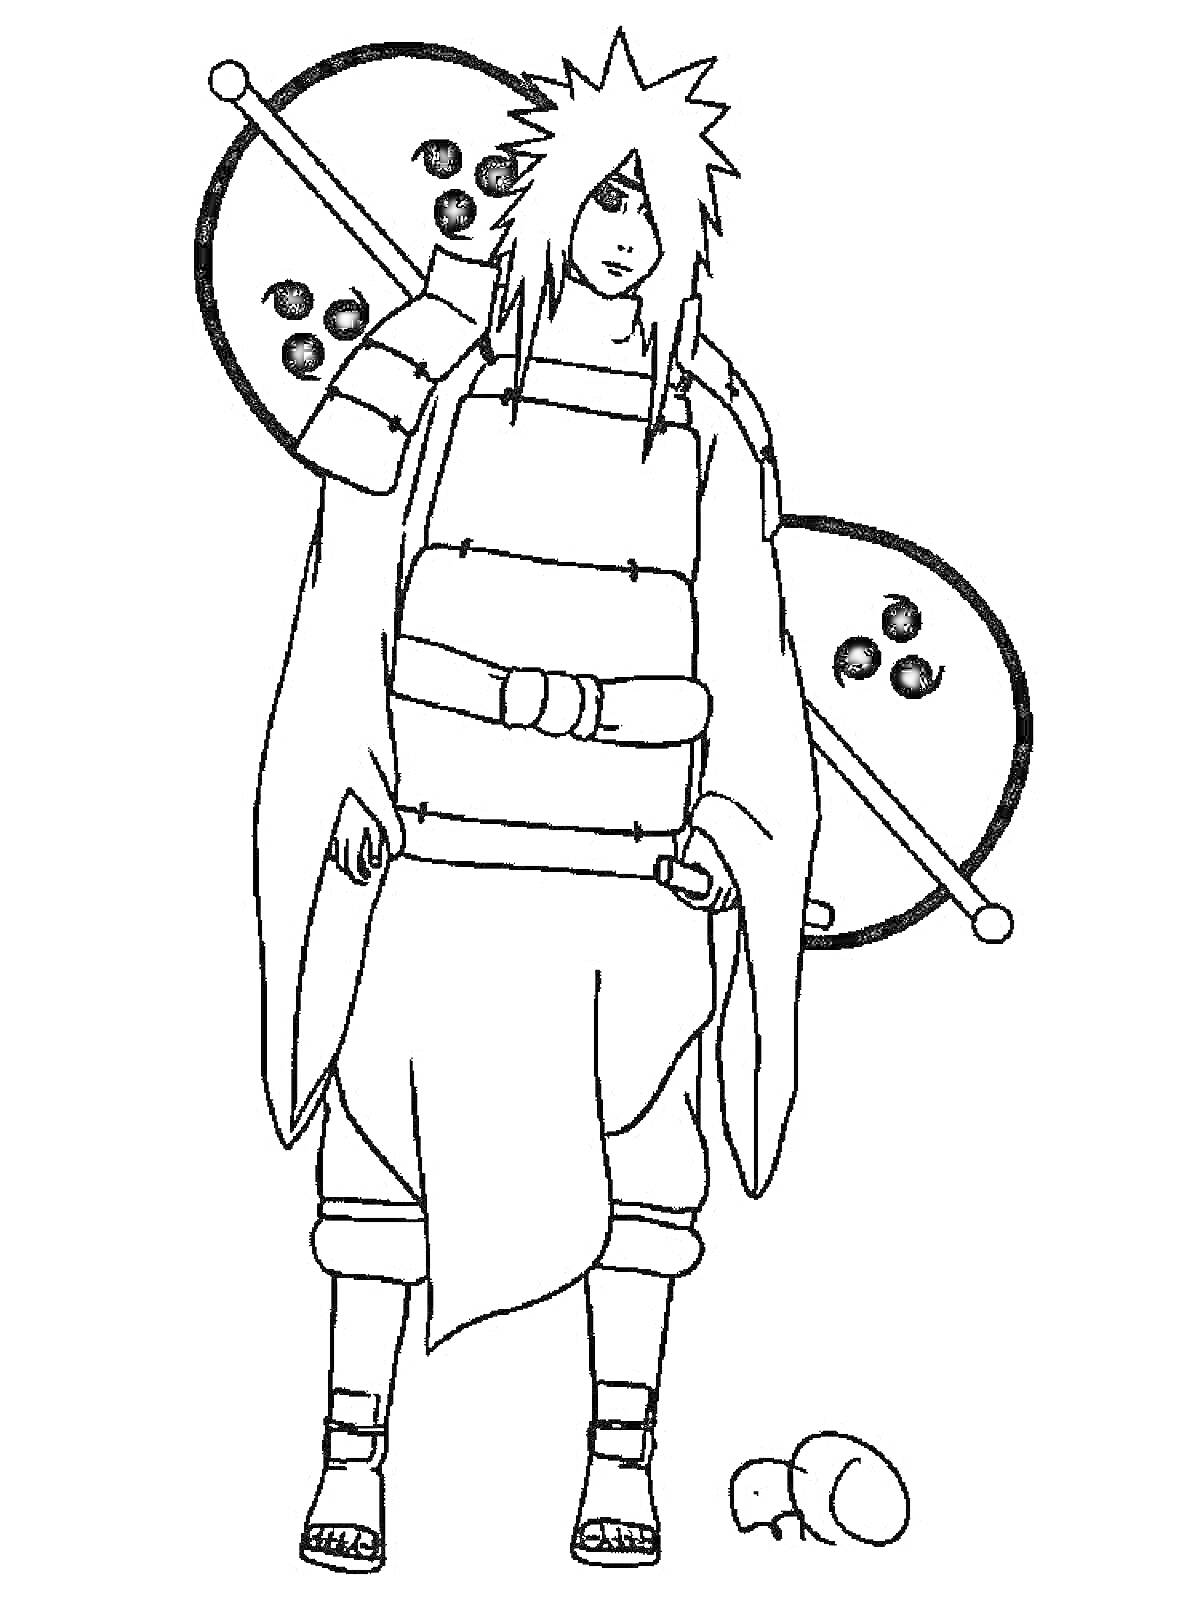 Раскраска Героическое изображение персонажа Наруто с большими веерами и лягушкой в детальной одежде